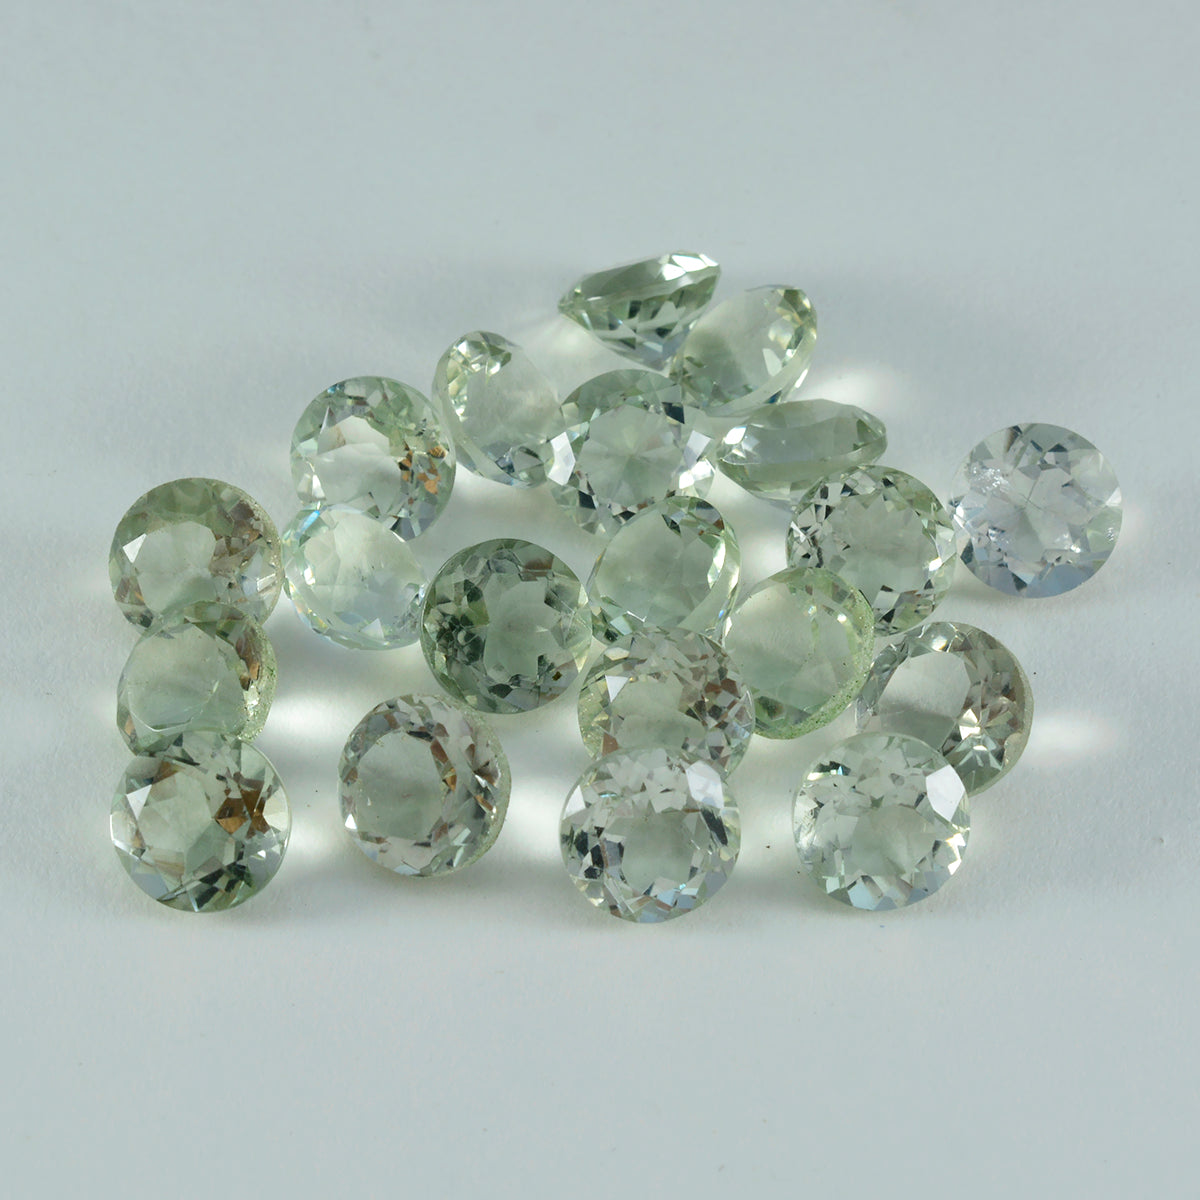 Riyogems 1 Stück grüner Amethyst, facettiert, 5 x 5 mm, runde Form, gut aussehende, hochwertige lose Edelsteine